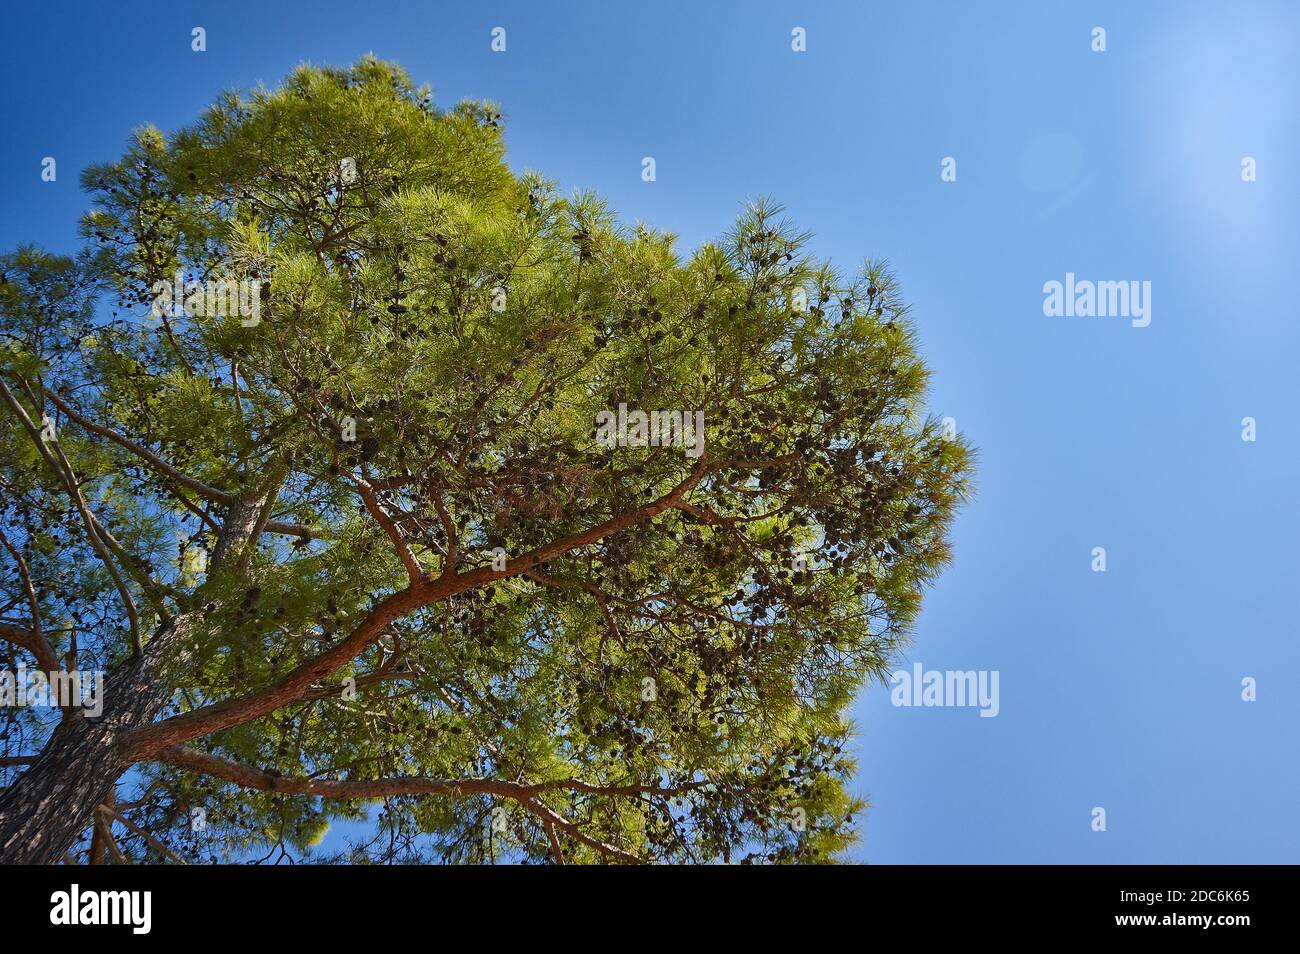 Pinus brutia, pino turco originario della regione del Mediterraneo orientale Foto Stock